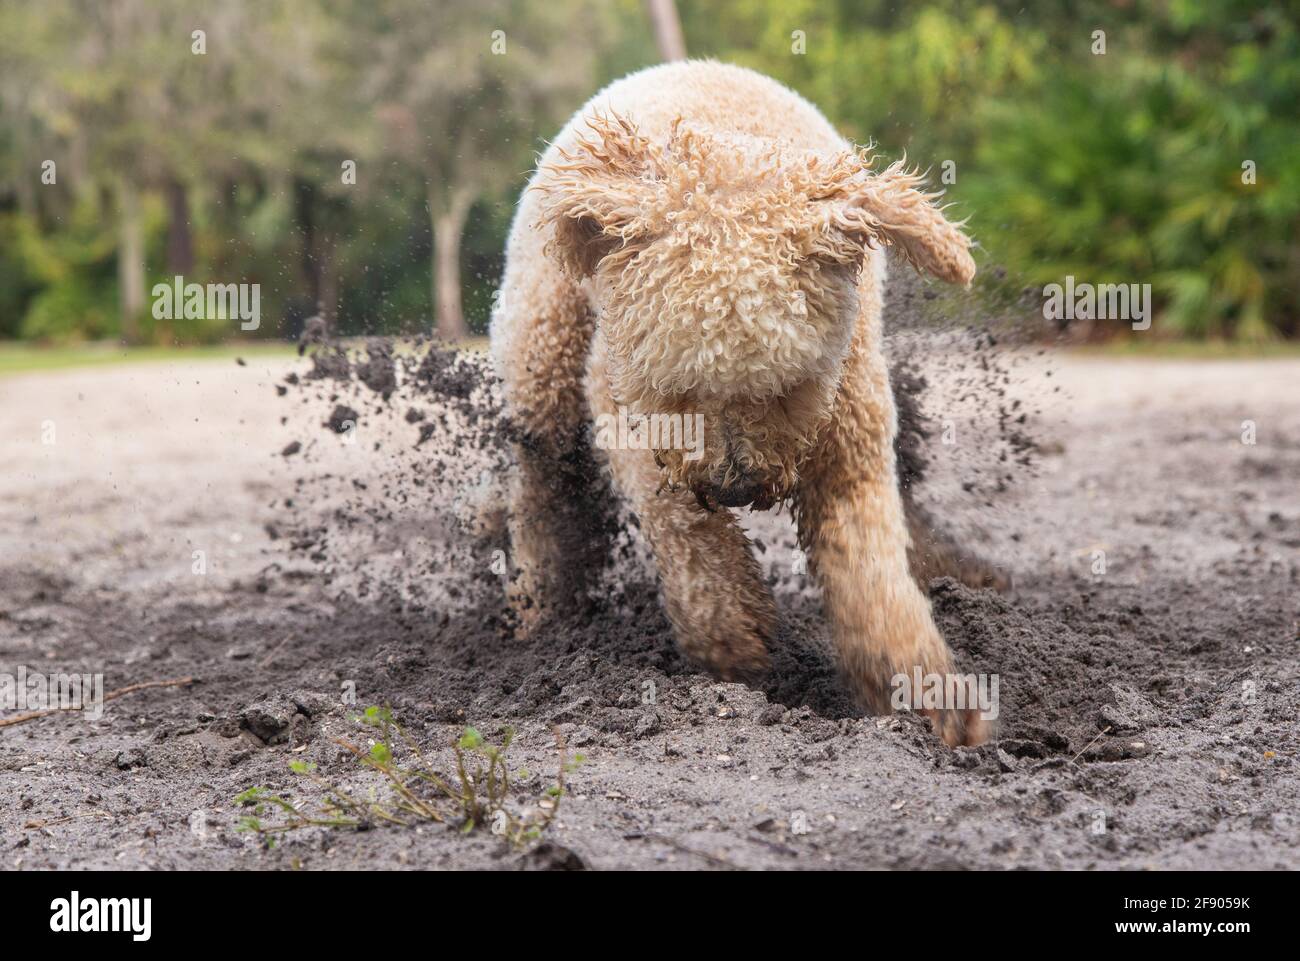 Goldendoodle chien creusant dans le sable sur la plage, Floride, États-Unis Banque D'Images